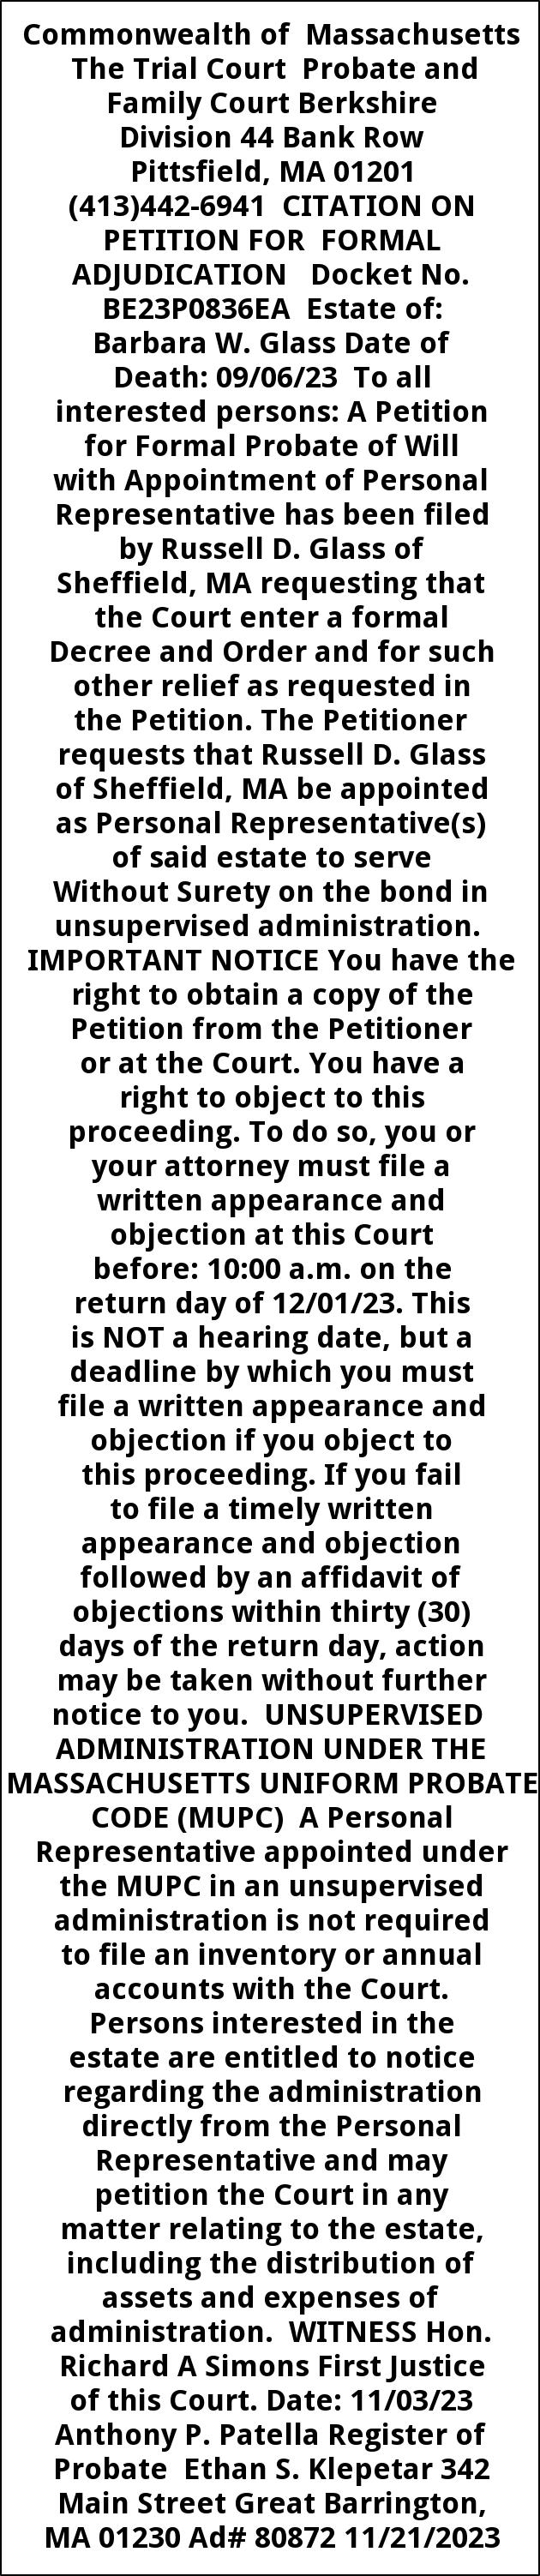 Citation on Petition for Formal Adjudication